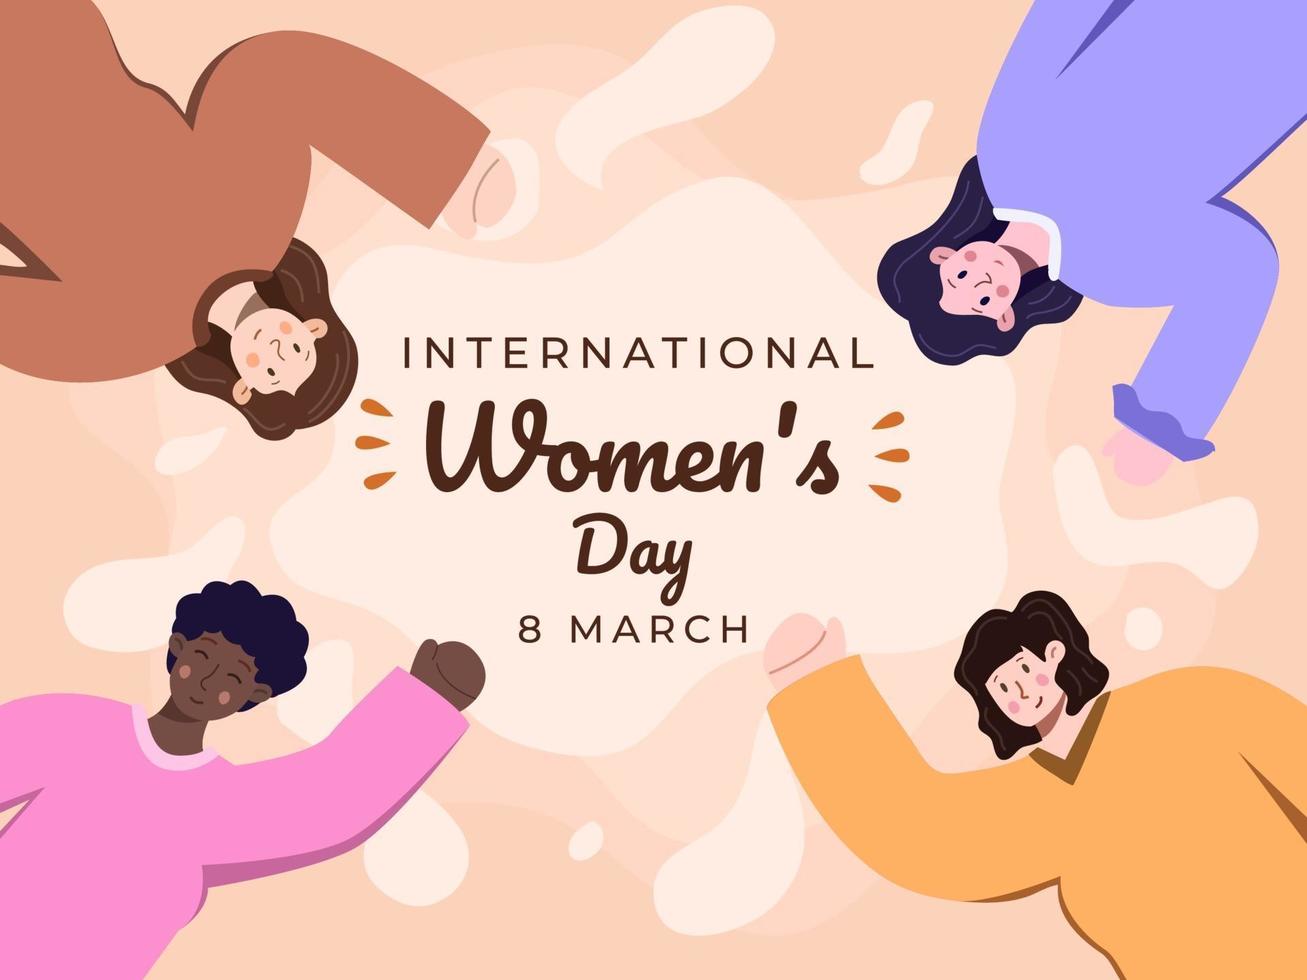 gelukkige internationale vrouwendag op 8 maart met nationaliteiten diversiteit vlakke afbeelding. vrouwen met verschillende etnische groepen die samen vrouwendag vieren. feestelijke vrouwendag. wenskaart, banner vector